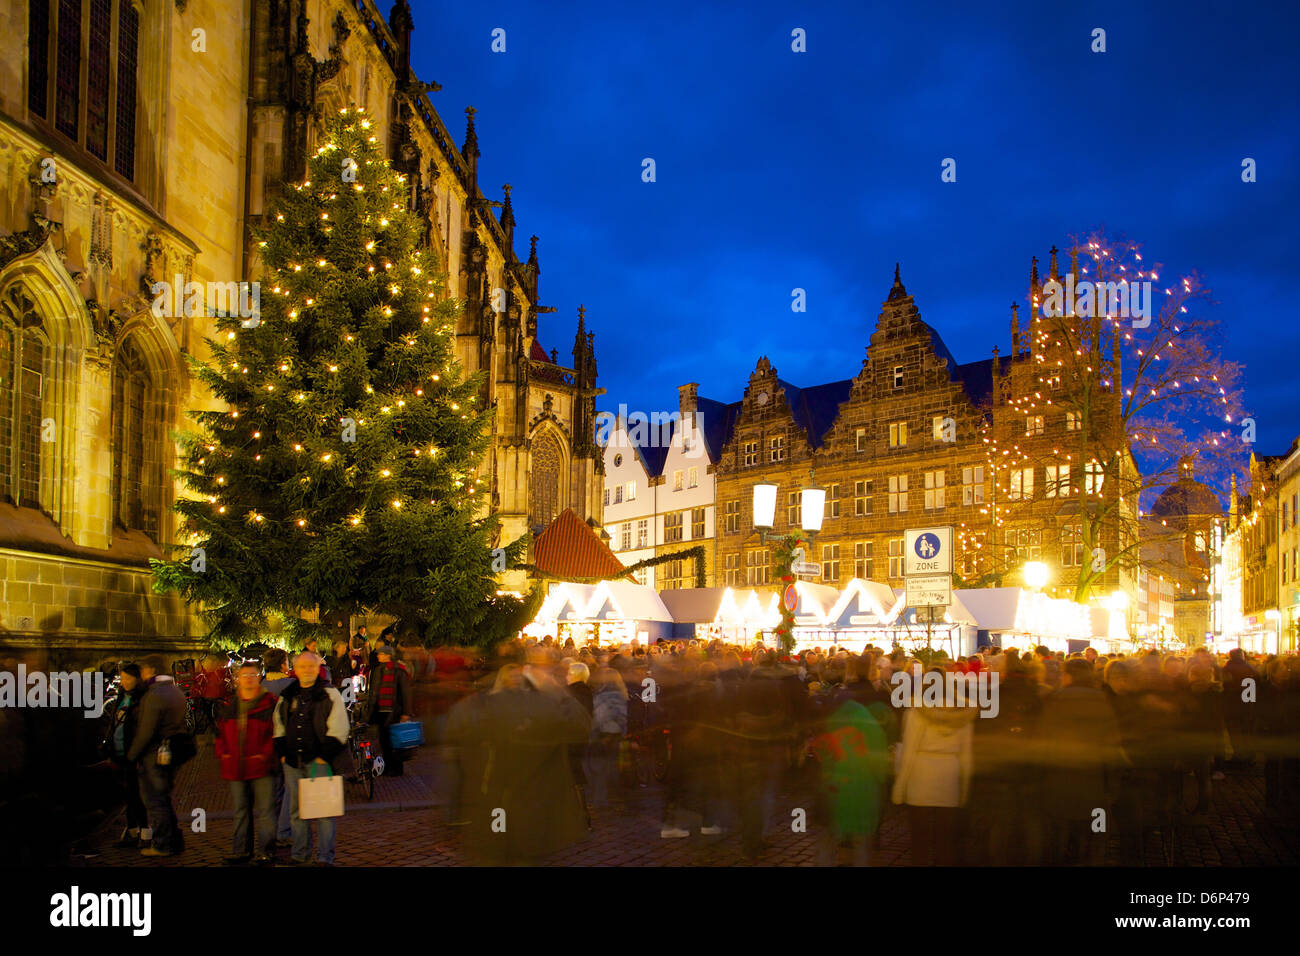 St. Lambert Kirche und Prinzipalmarkt in Münster, Nordrhein-Westfalen,  Deutschland, Weihnachten, Europa Stockfotografie - Alamy